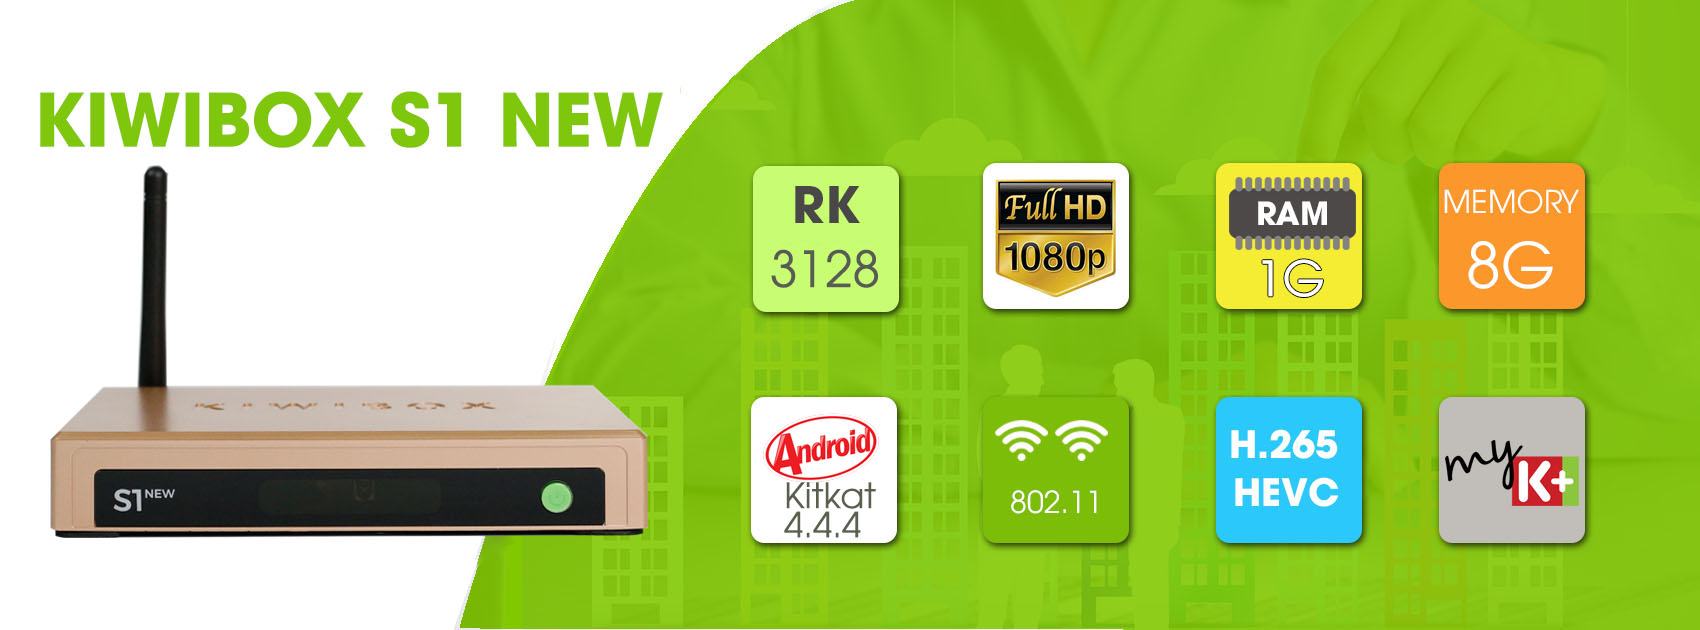 KIWI BOX S1 NEW - BIẾN TV THƯỜNG THÀNH SMART TV - 2